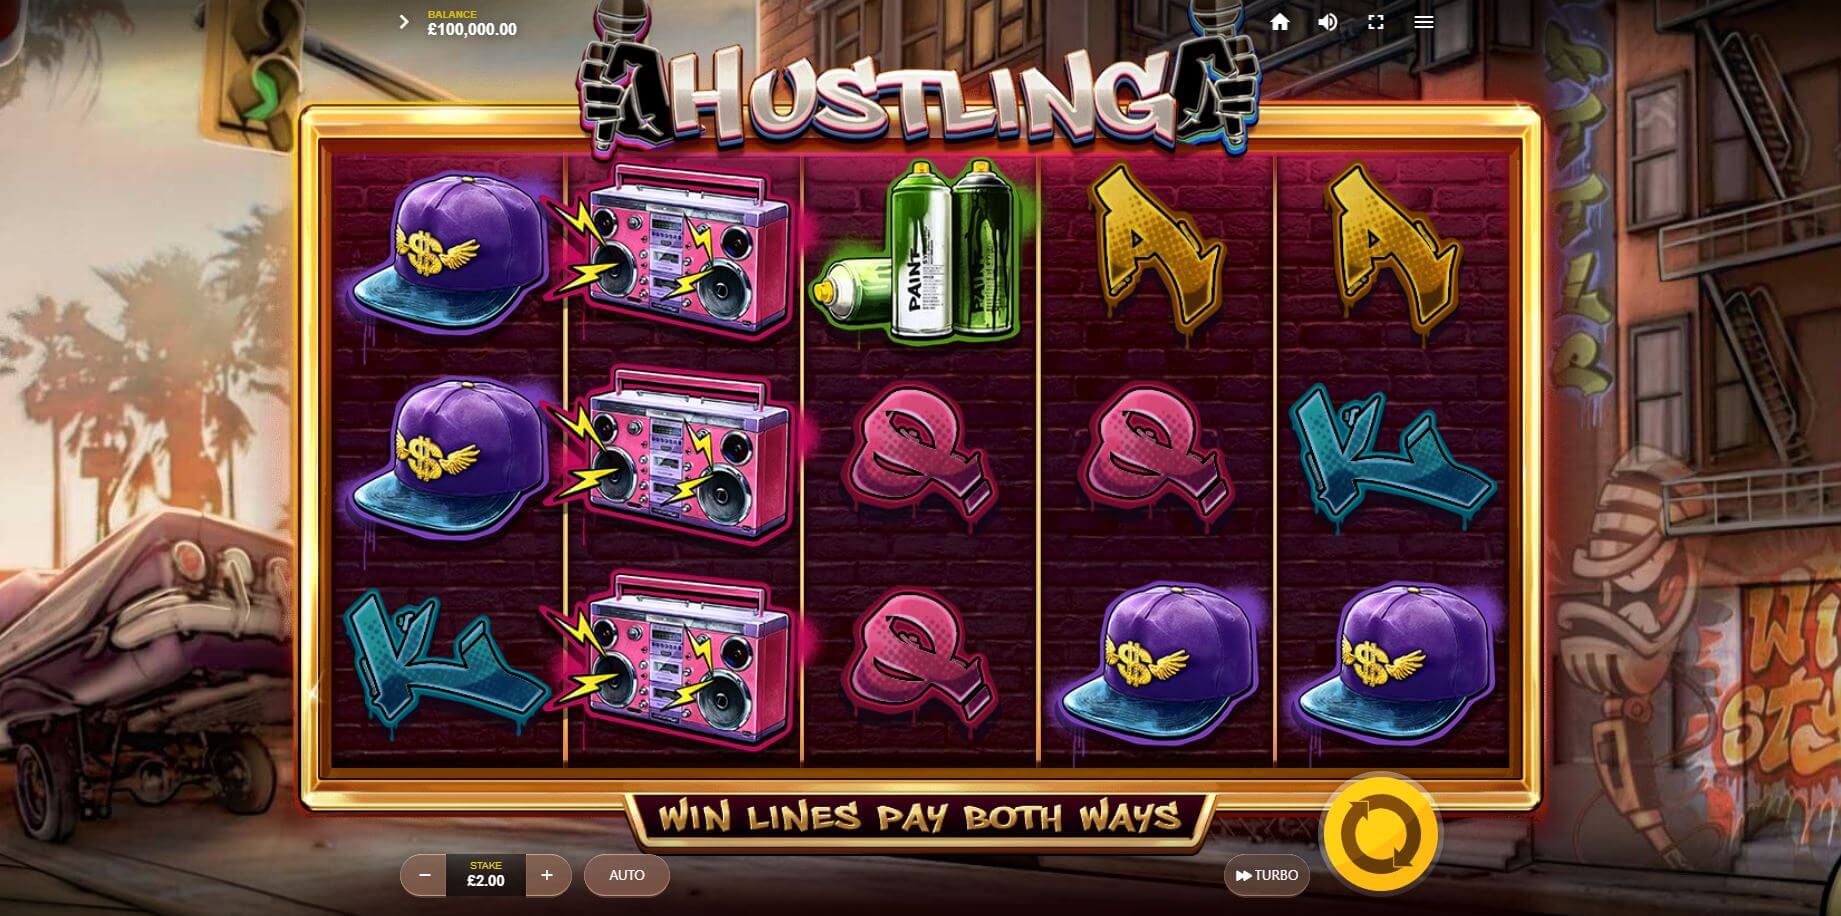 Hustling slot